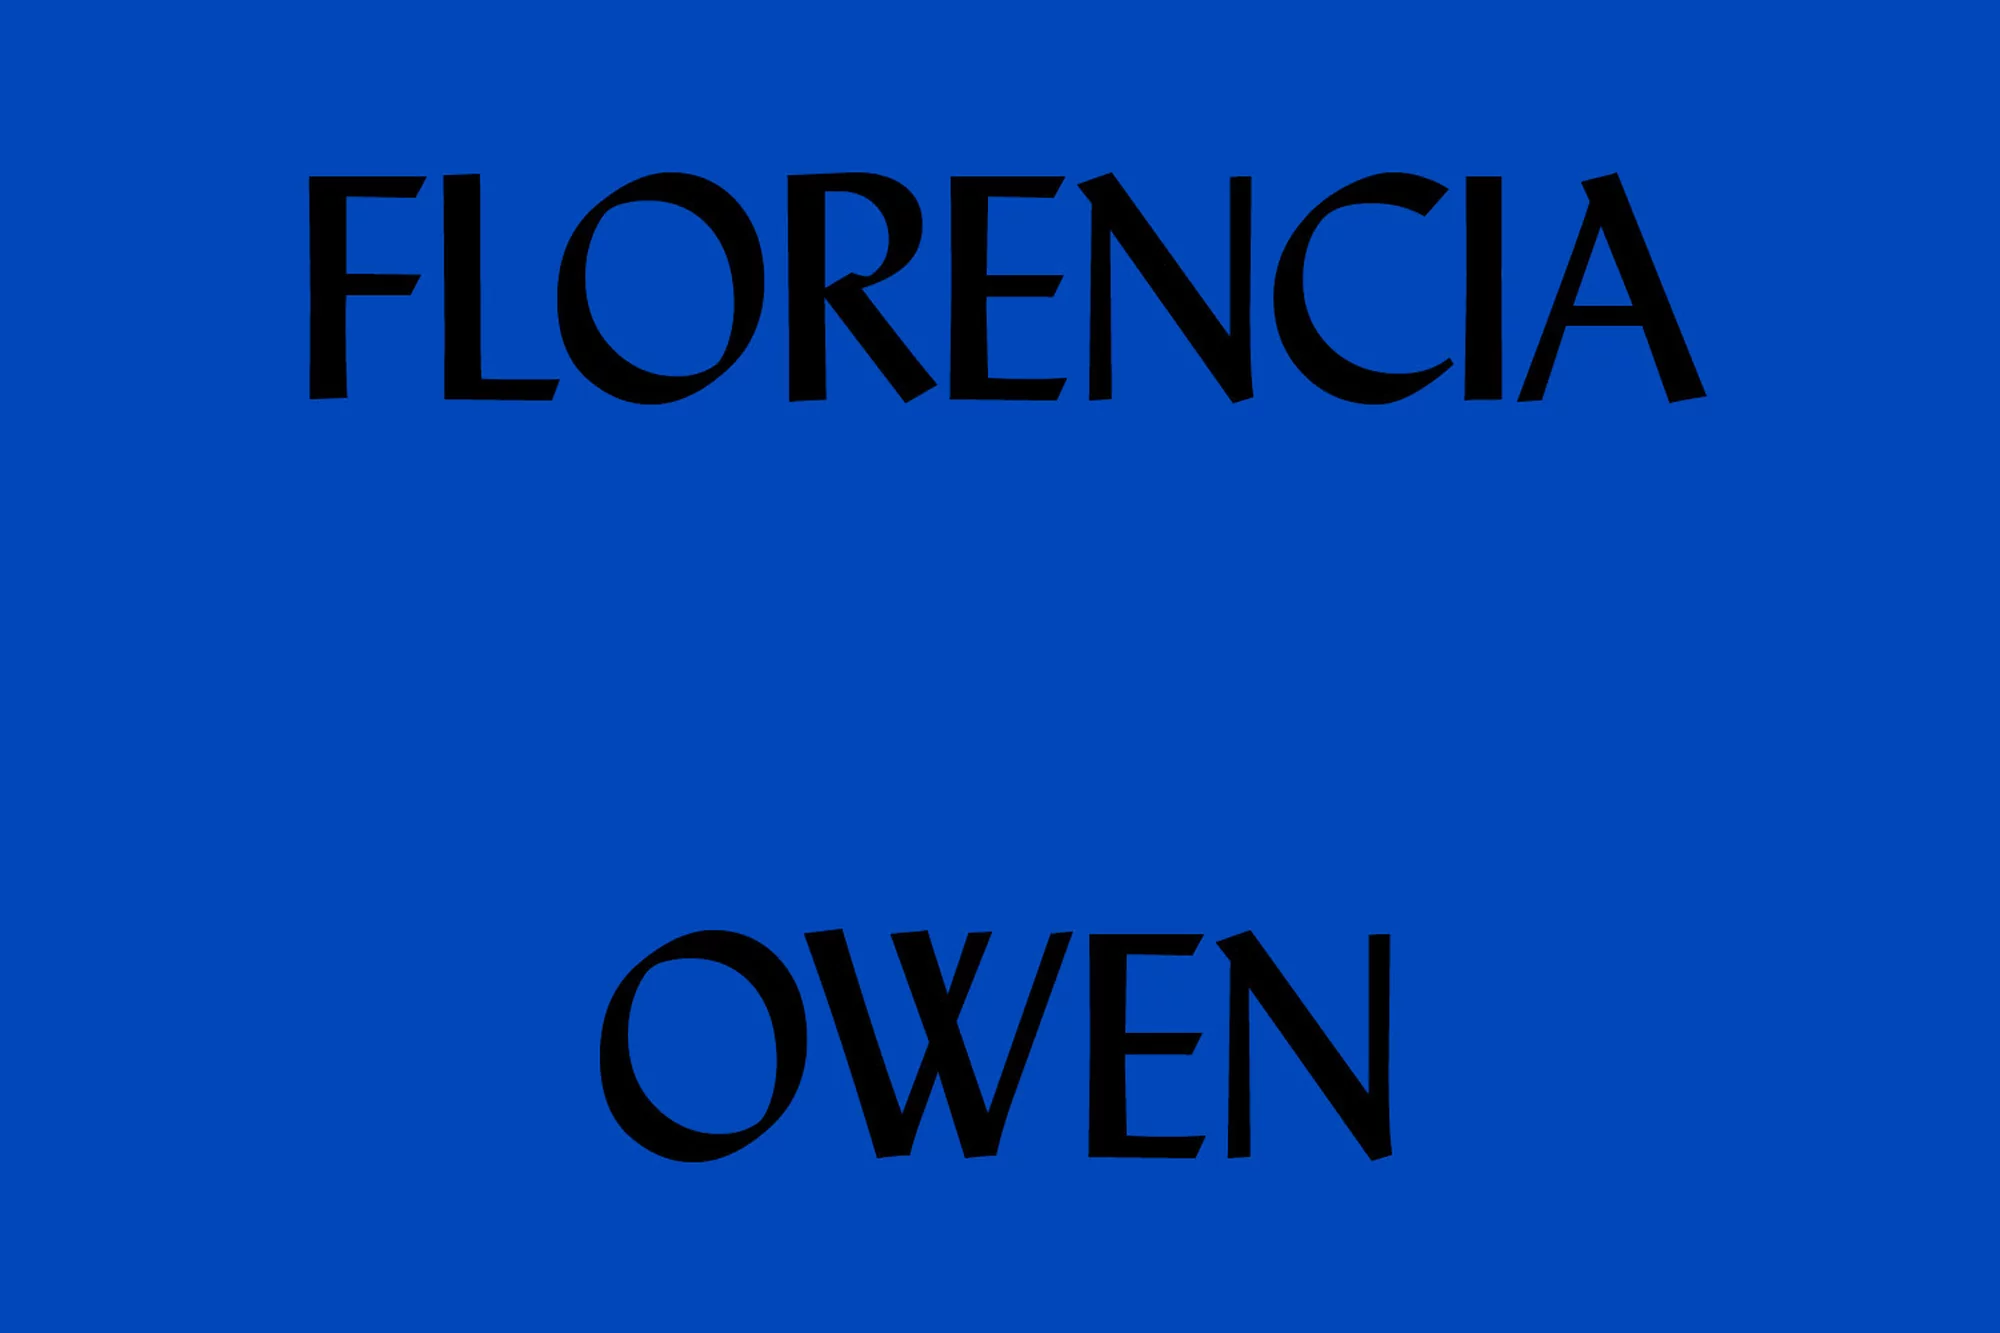 Florencia Owen by Robertus Alexander